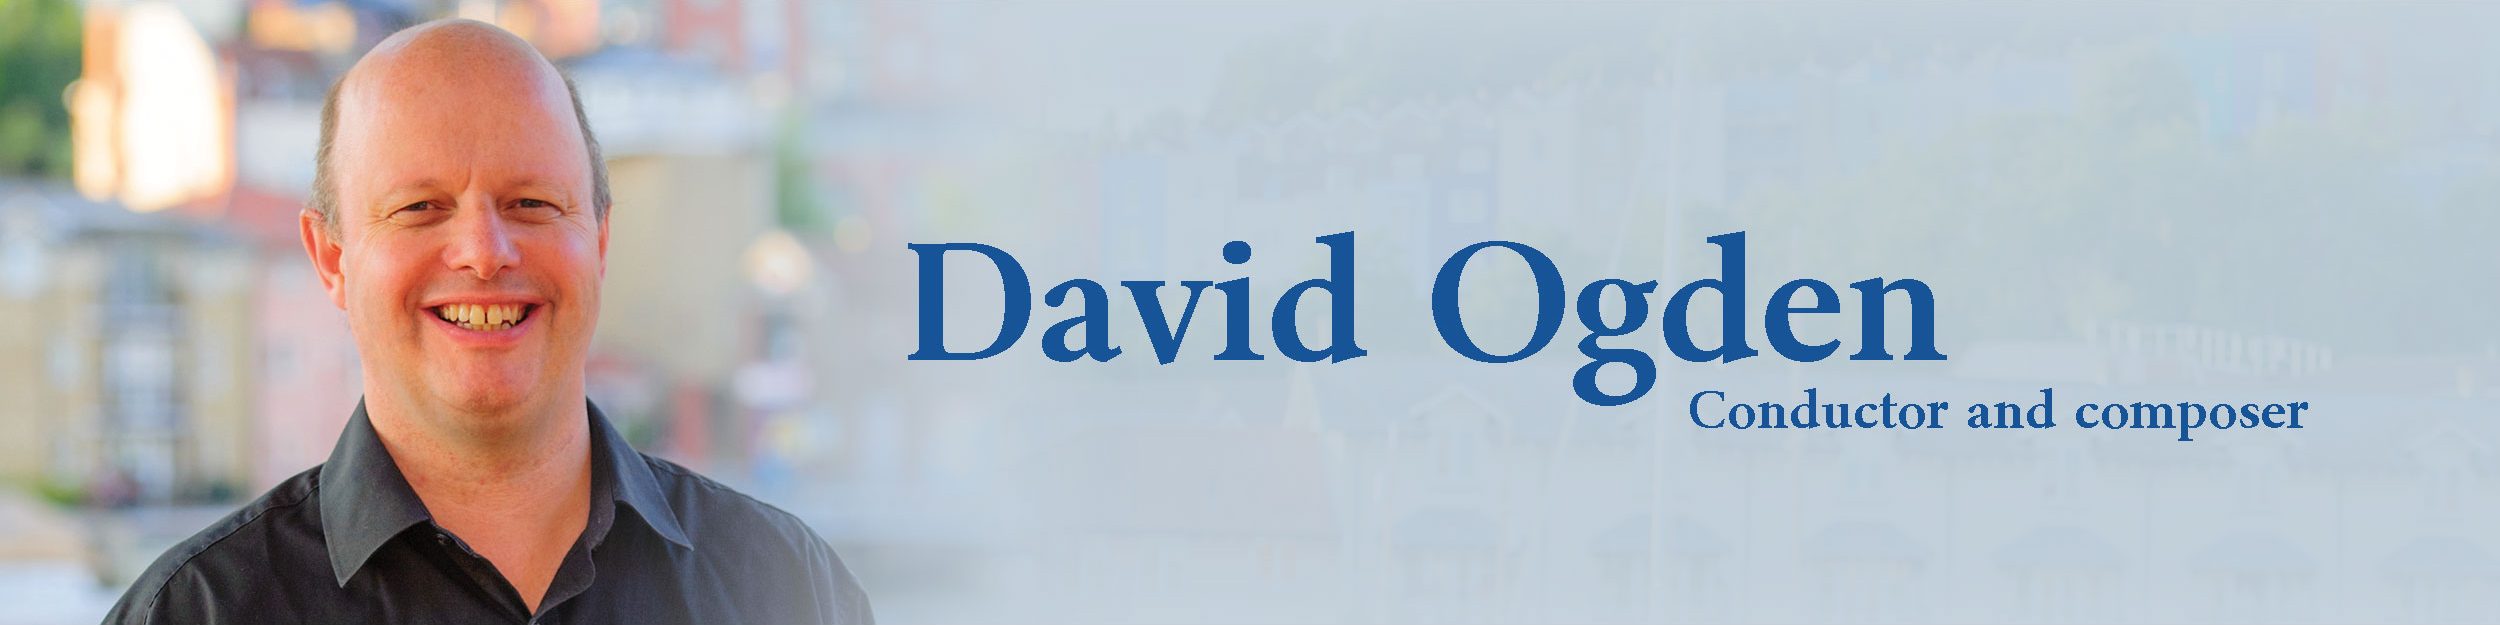 David Ogden